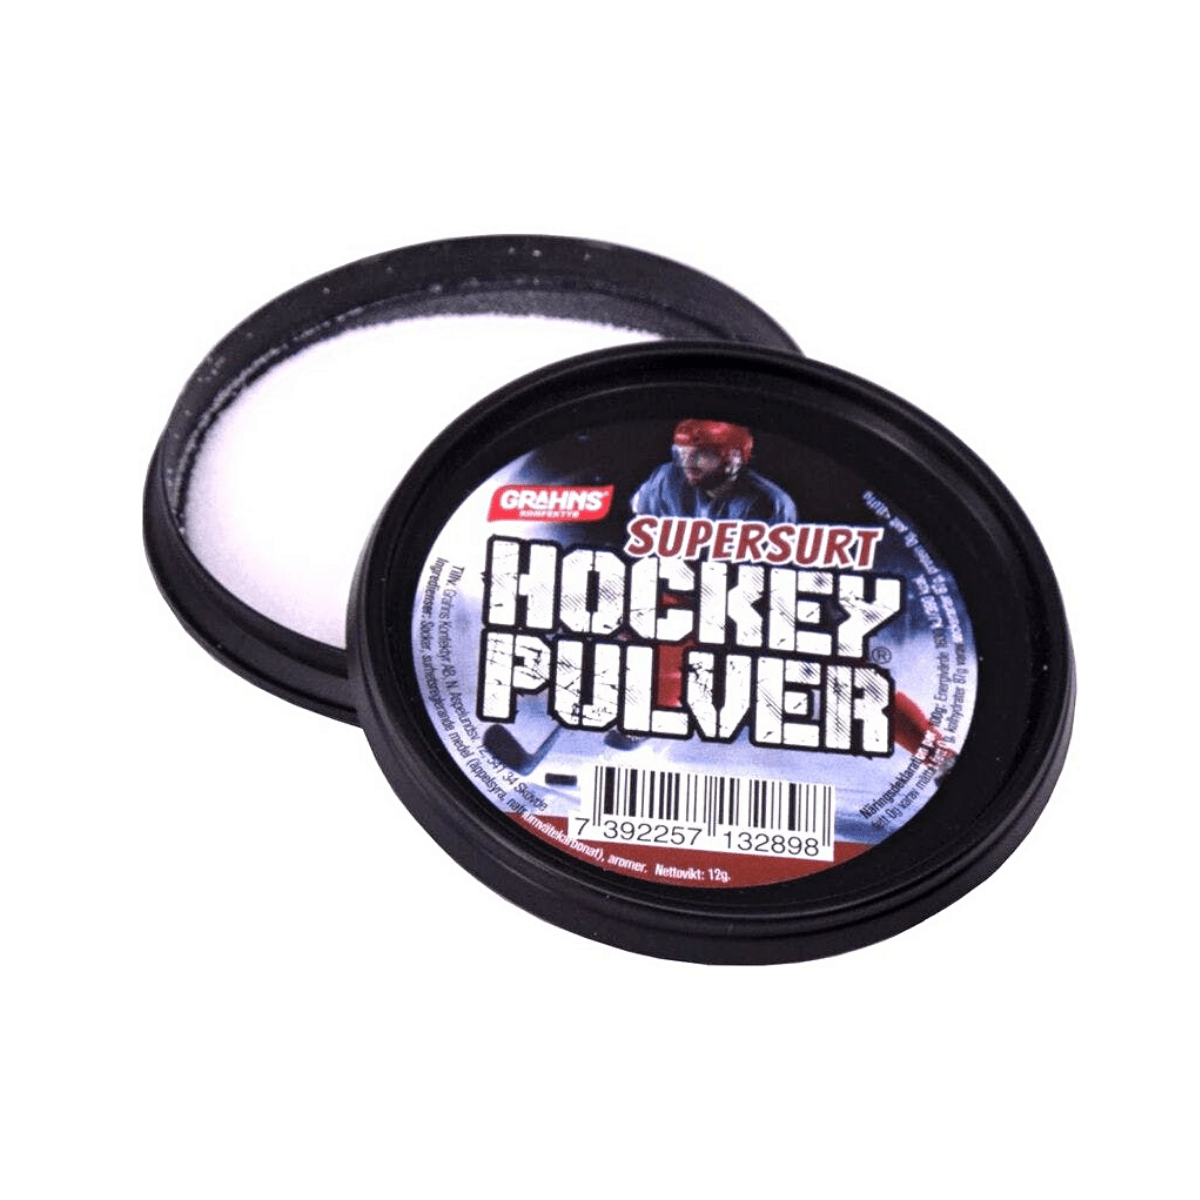 Hockeypulver Supersurt